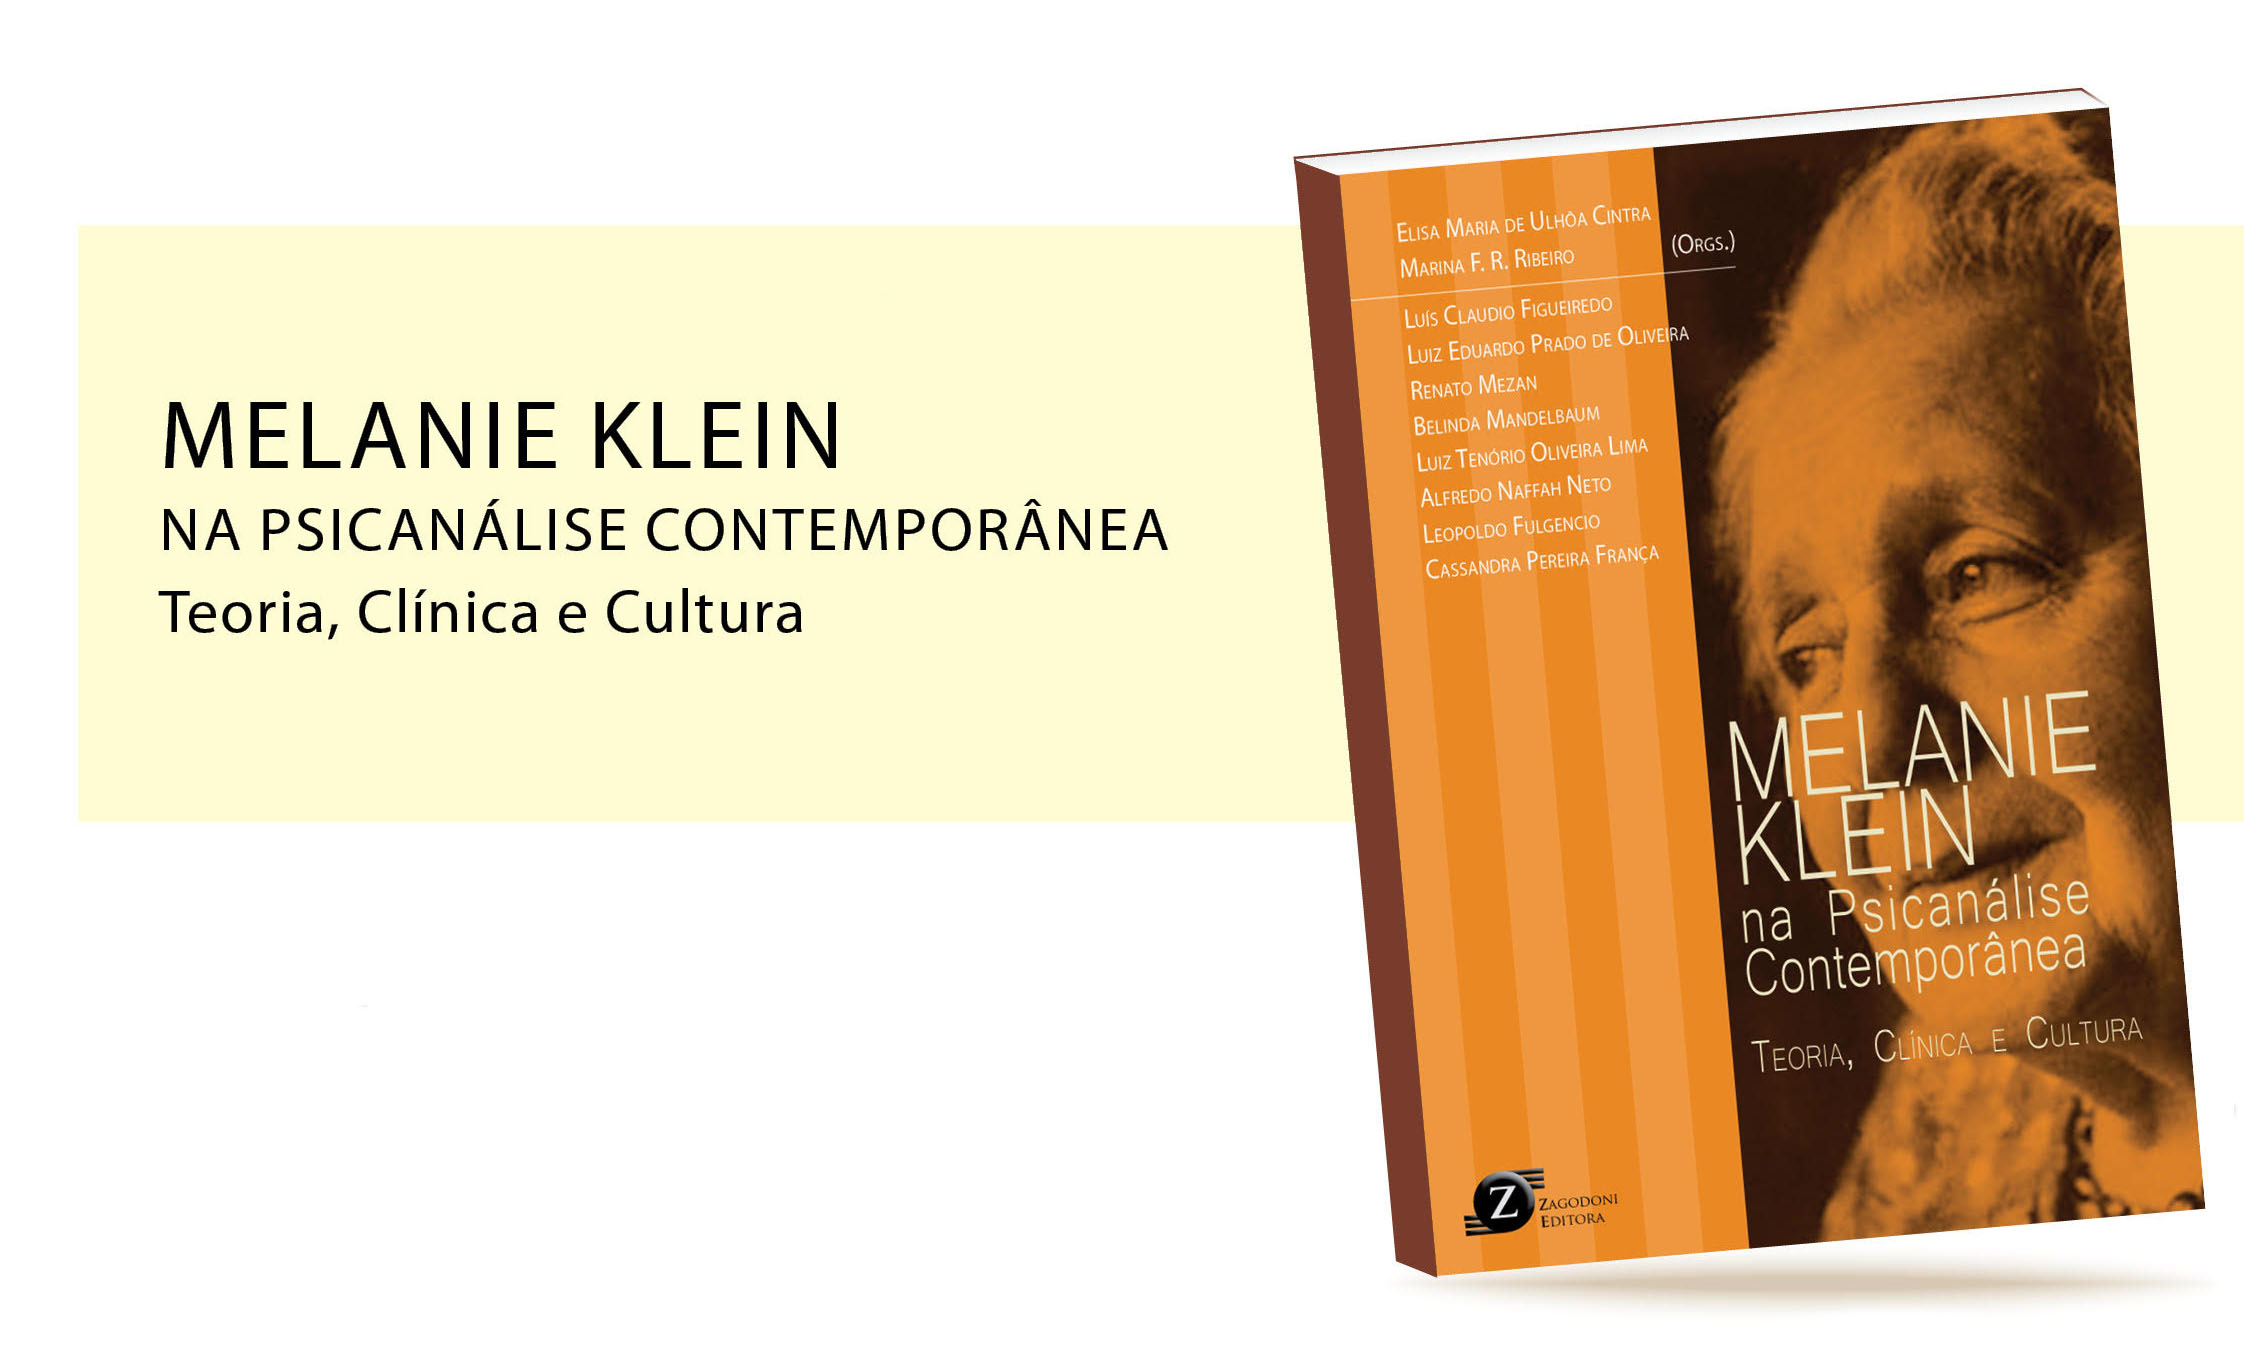 Lançamento do livro “Melanie Klein na Psicanálise Contemporânea: teoria, clínica e cultura”